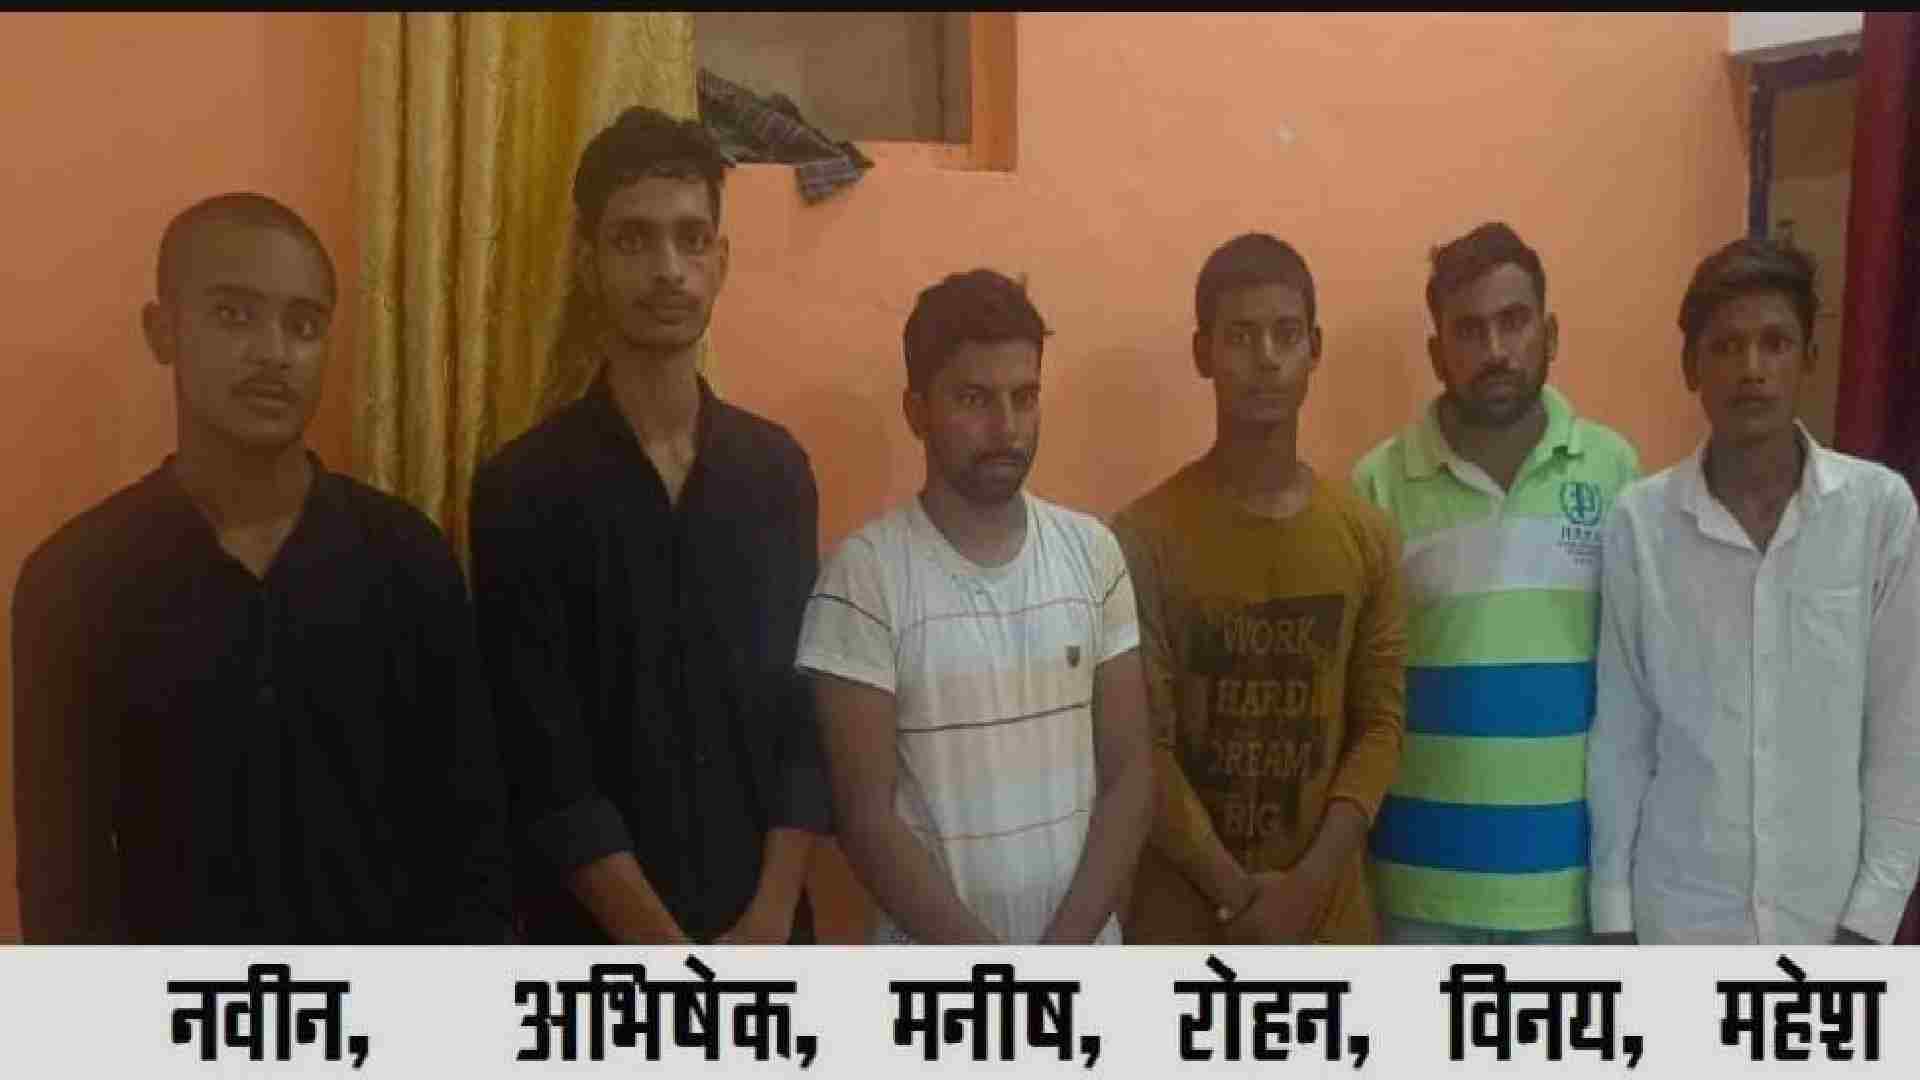 यूपी एसटीएफ की बड़ी कार्यवाही गाजीपुर से जिंदा हैंडग्रेनेड के साथ 6 को किया गिरफ्तार